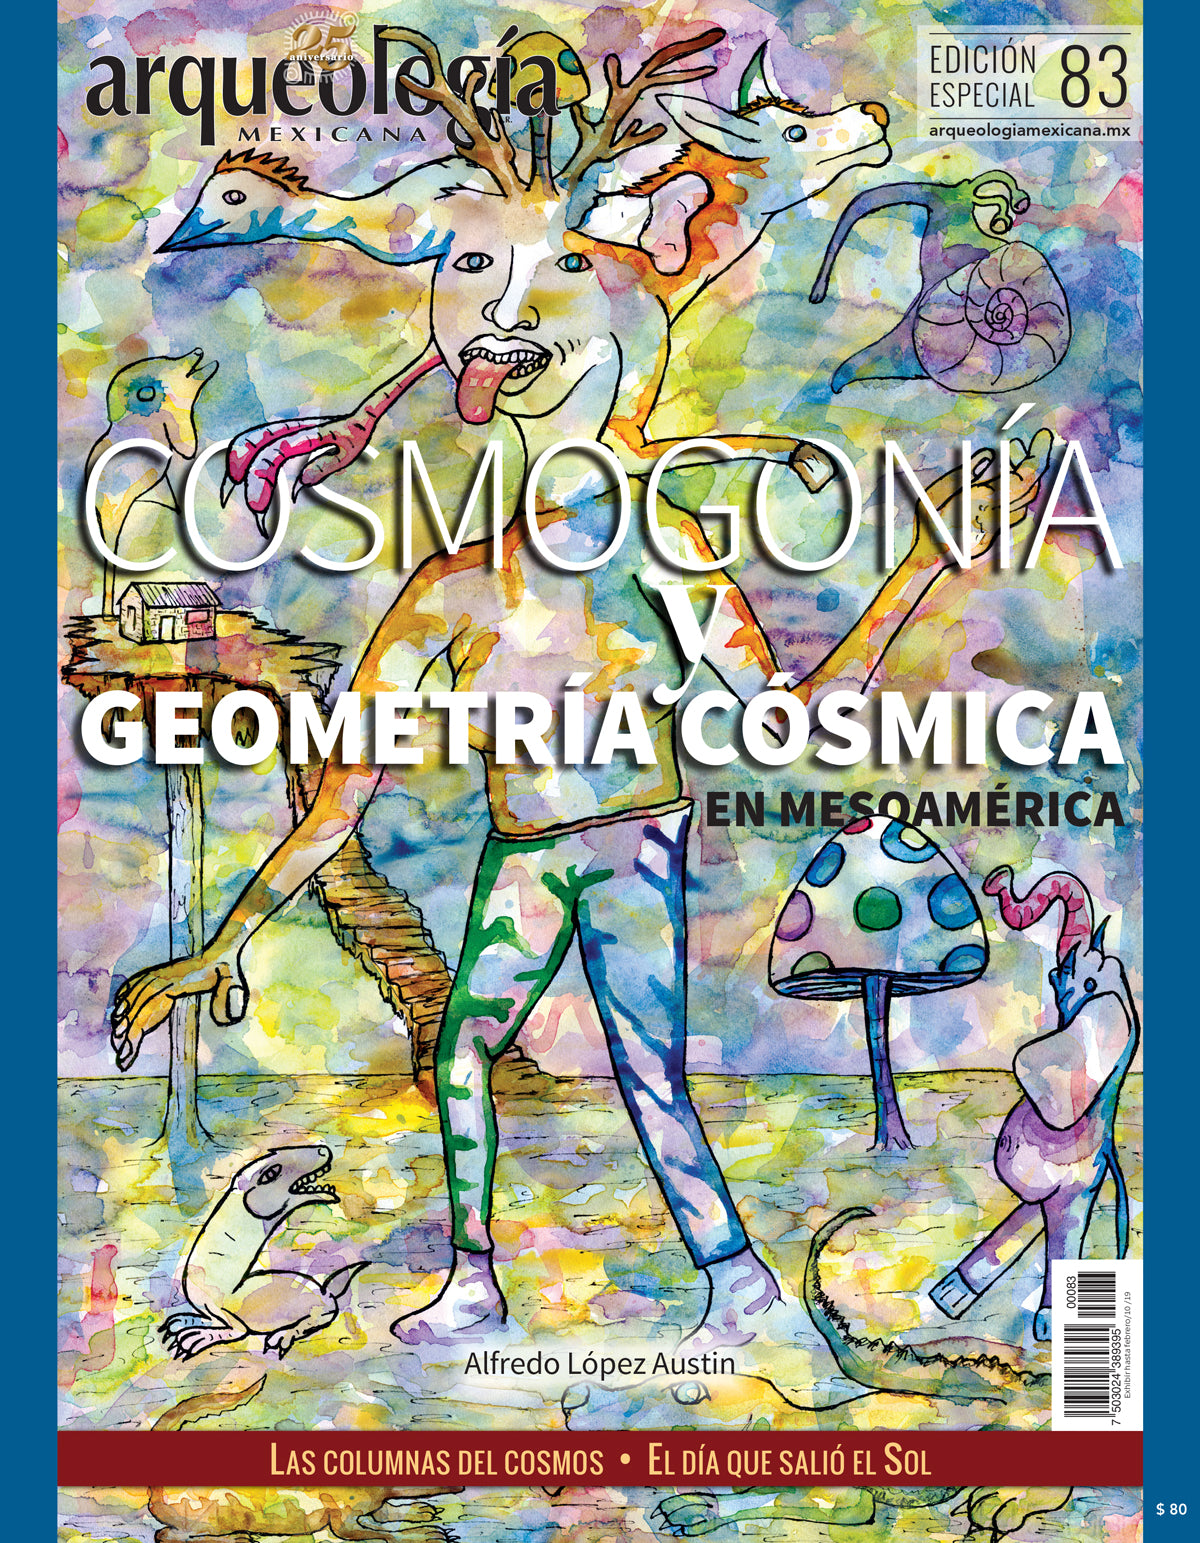 Cosmogonía y geometría cósmica en Mesoamérica